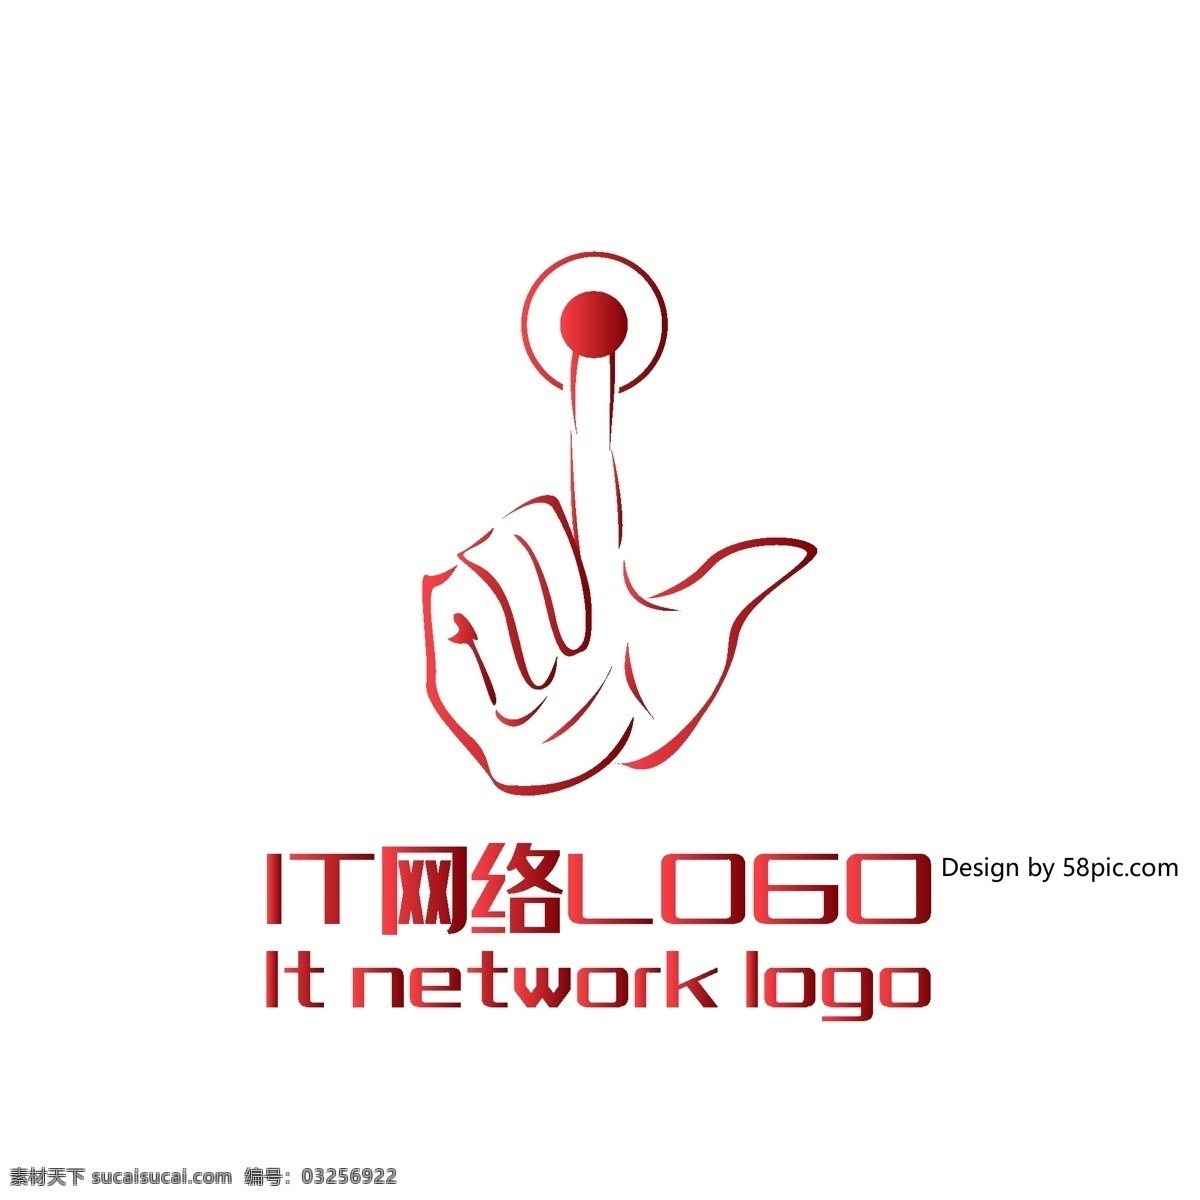 原创 创意 手绘 简约 手指 科技 it 网络 logo 可商用 手掌 手 标志